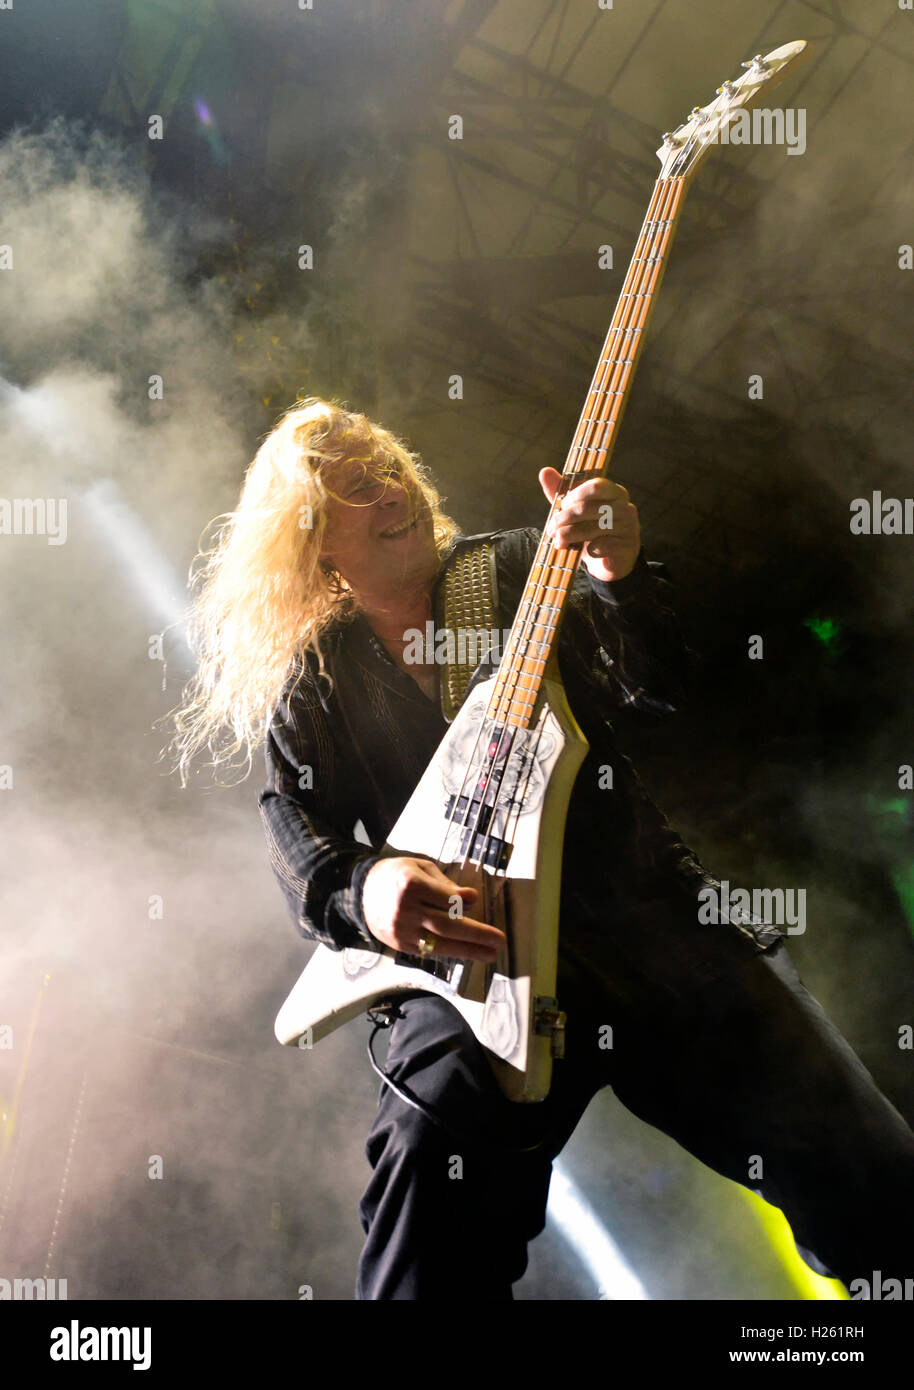 17. September 2016, Irvine Kalifornien, Dana Strum Bassist für Vince Neil auf der Bühne auf dem Sirius XM Haar Nation Fest Stockfoto